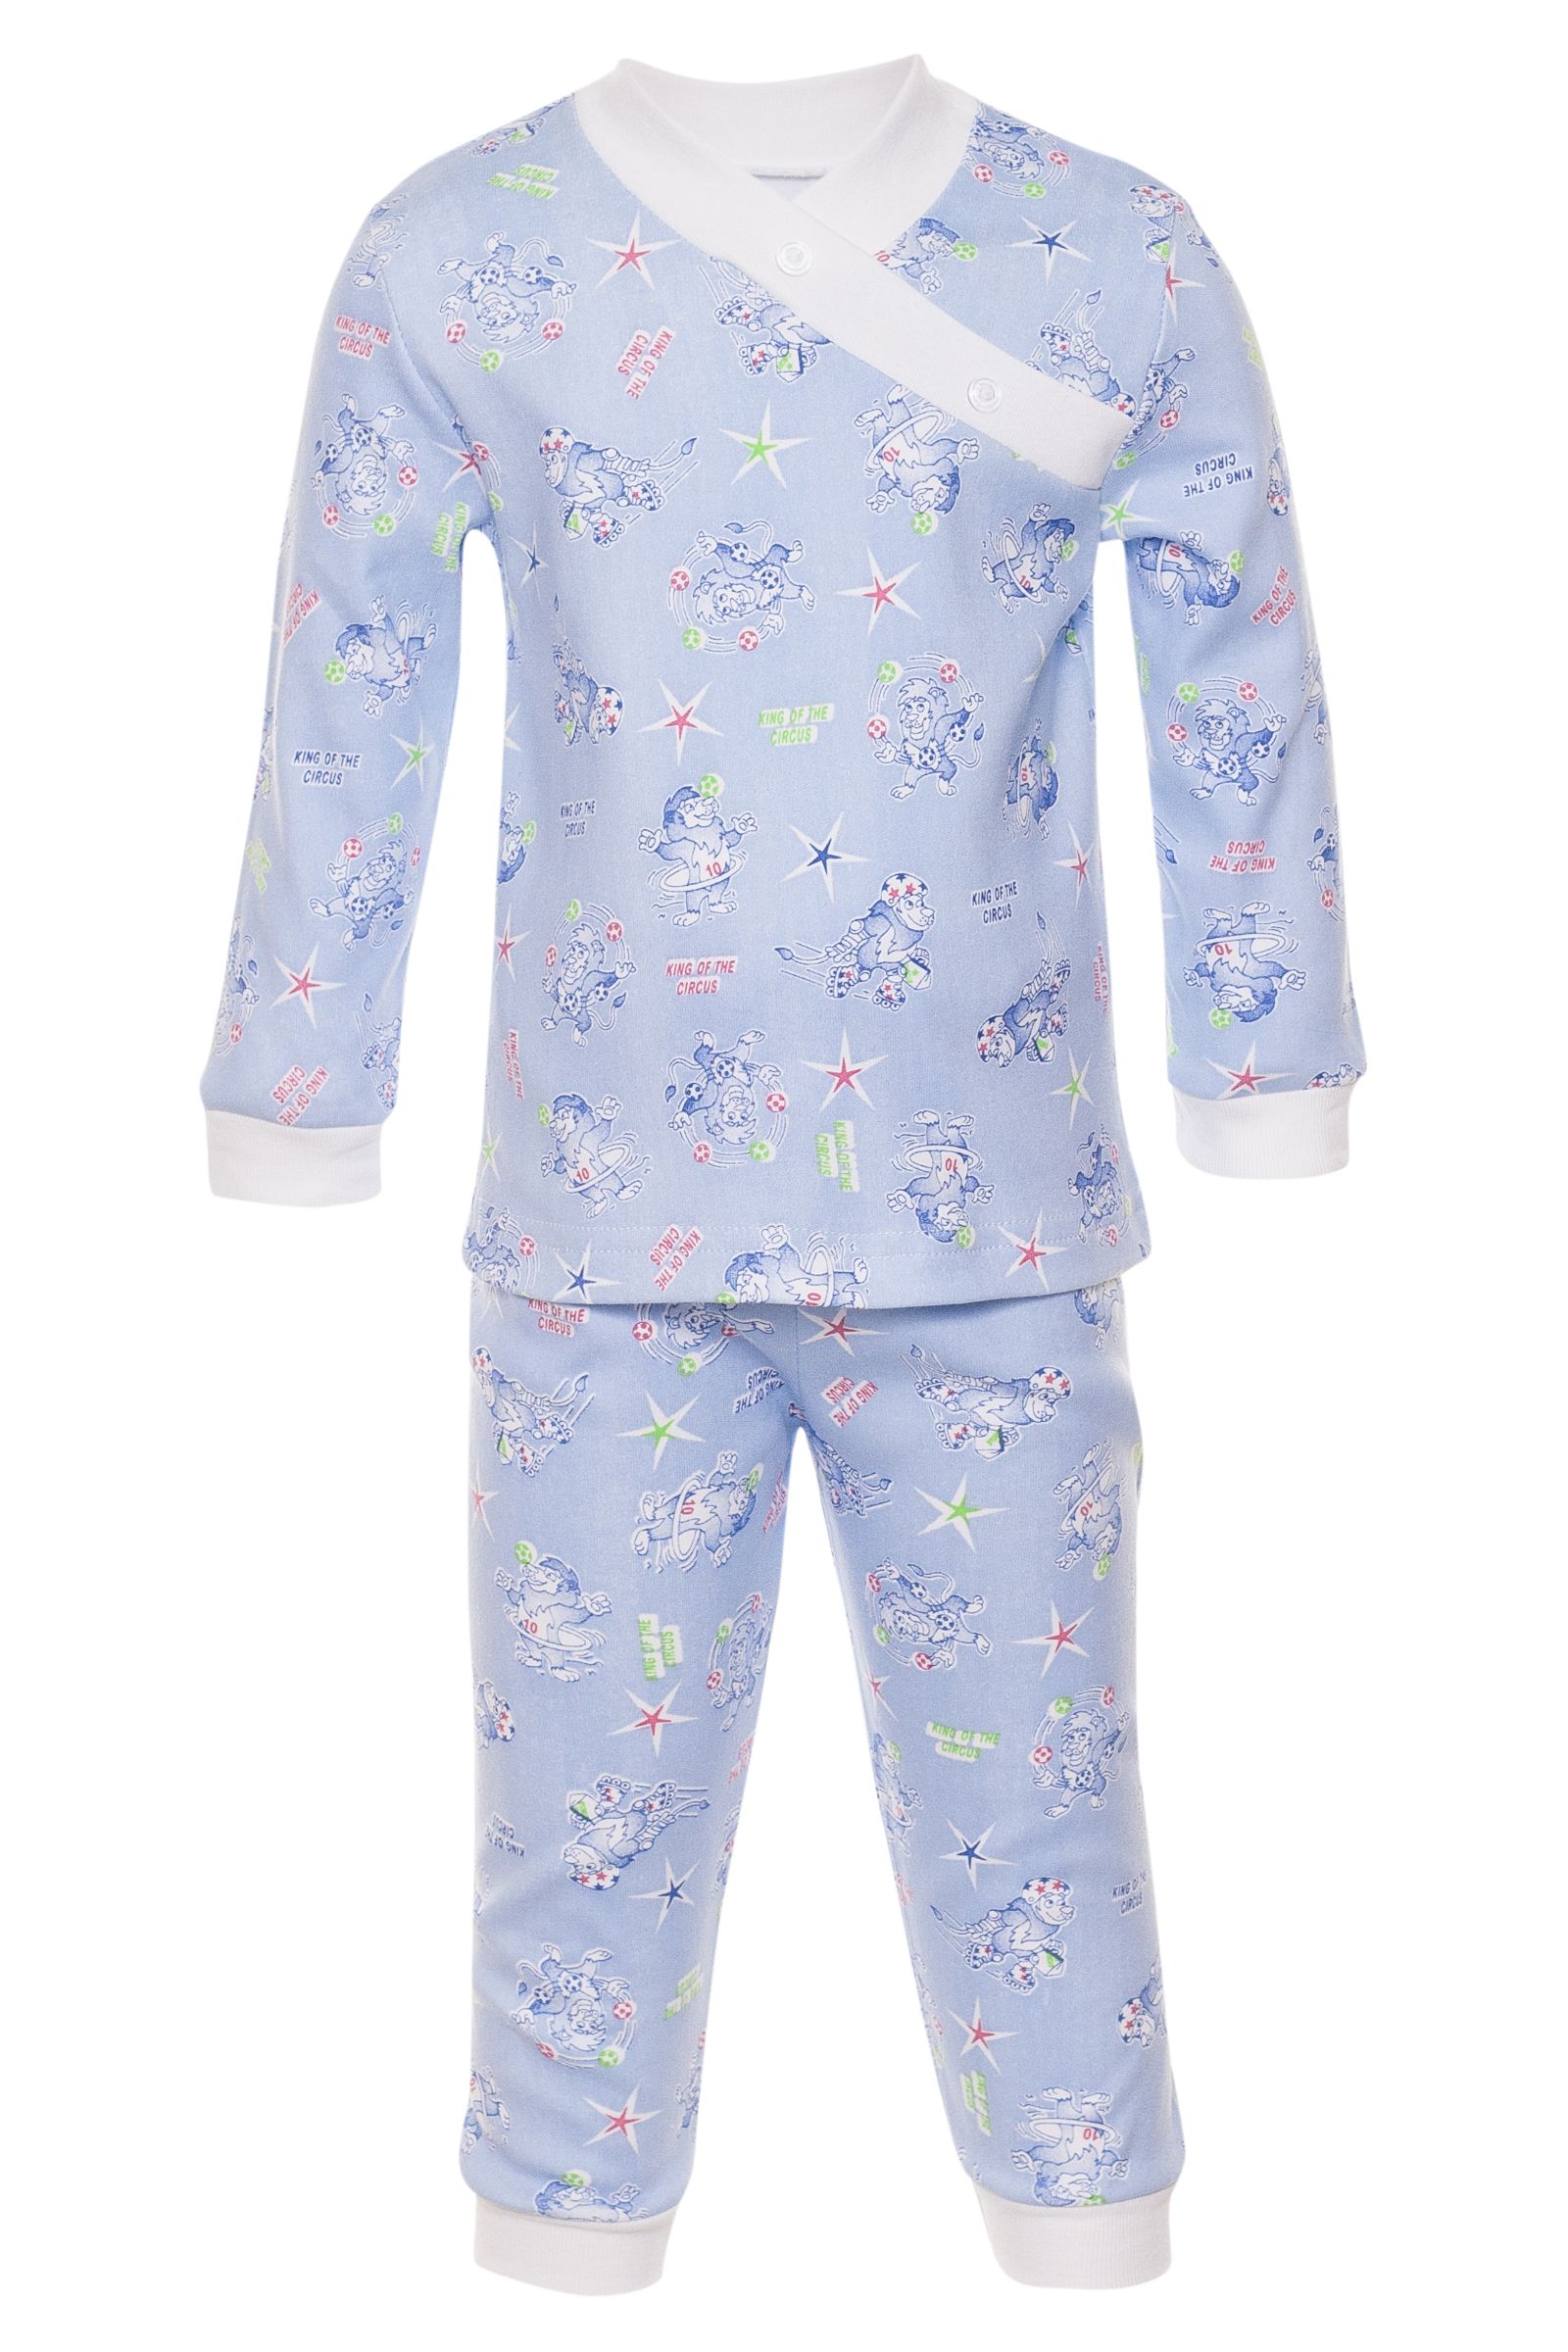 Пижама-ПЖ01-622 оптом от производителя детской одежды 'Алёна'